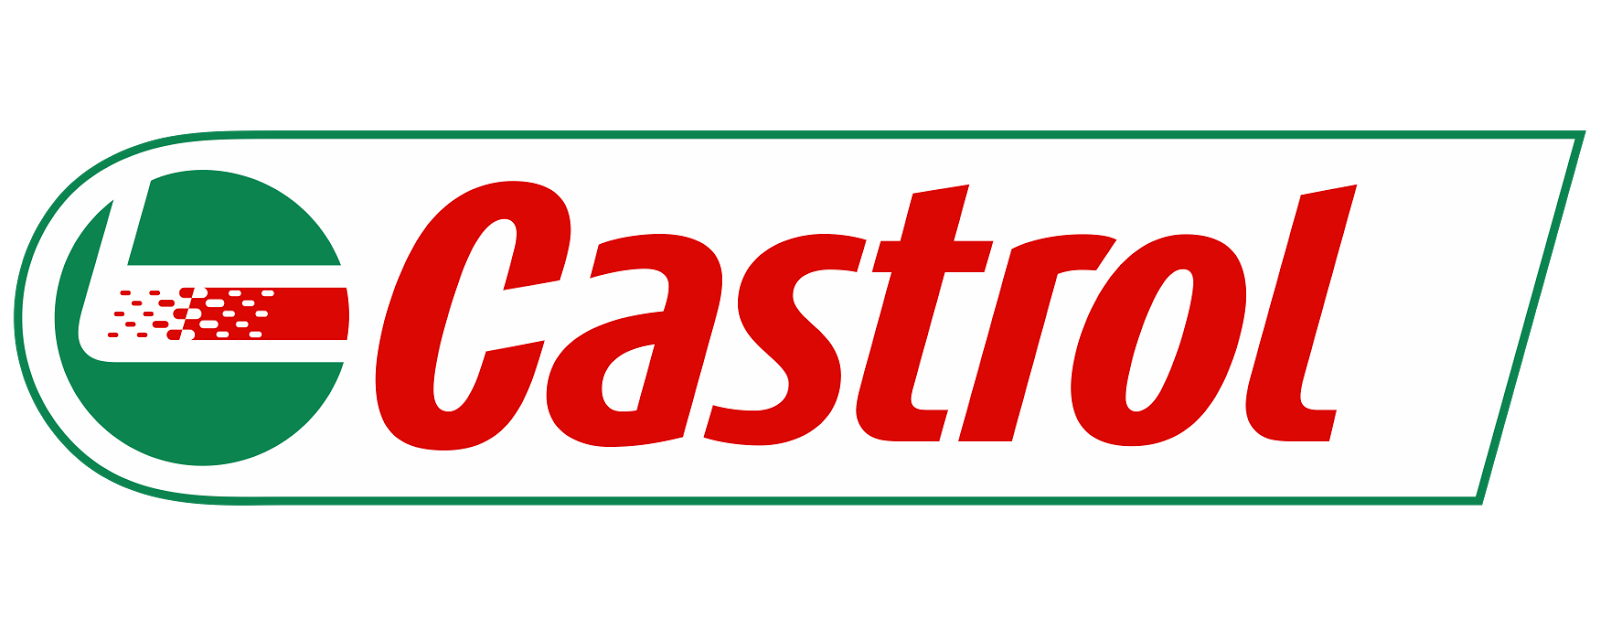 pics/Castrol/logo-castrol-car-motor-oil.png